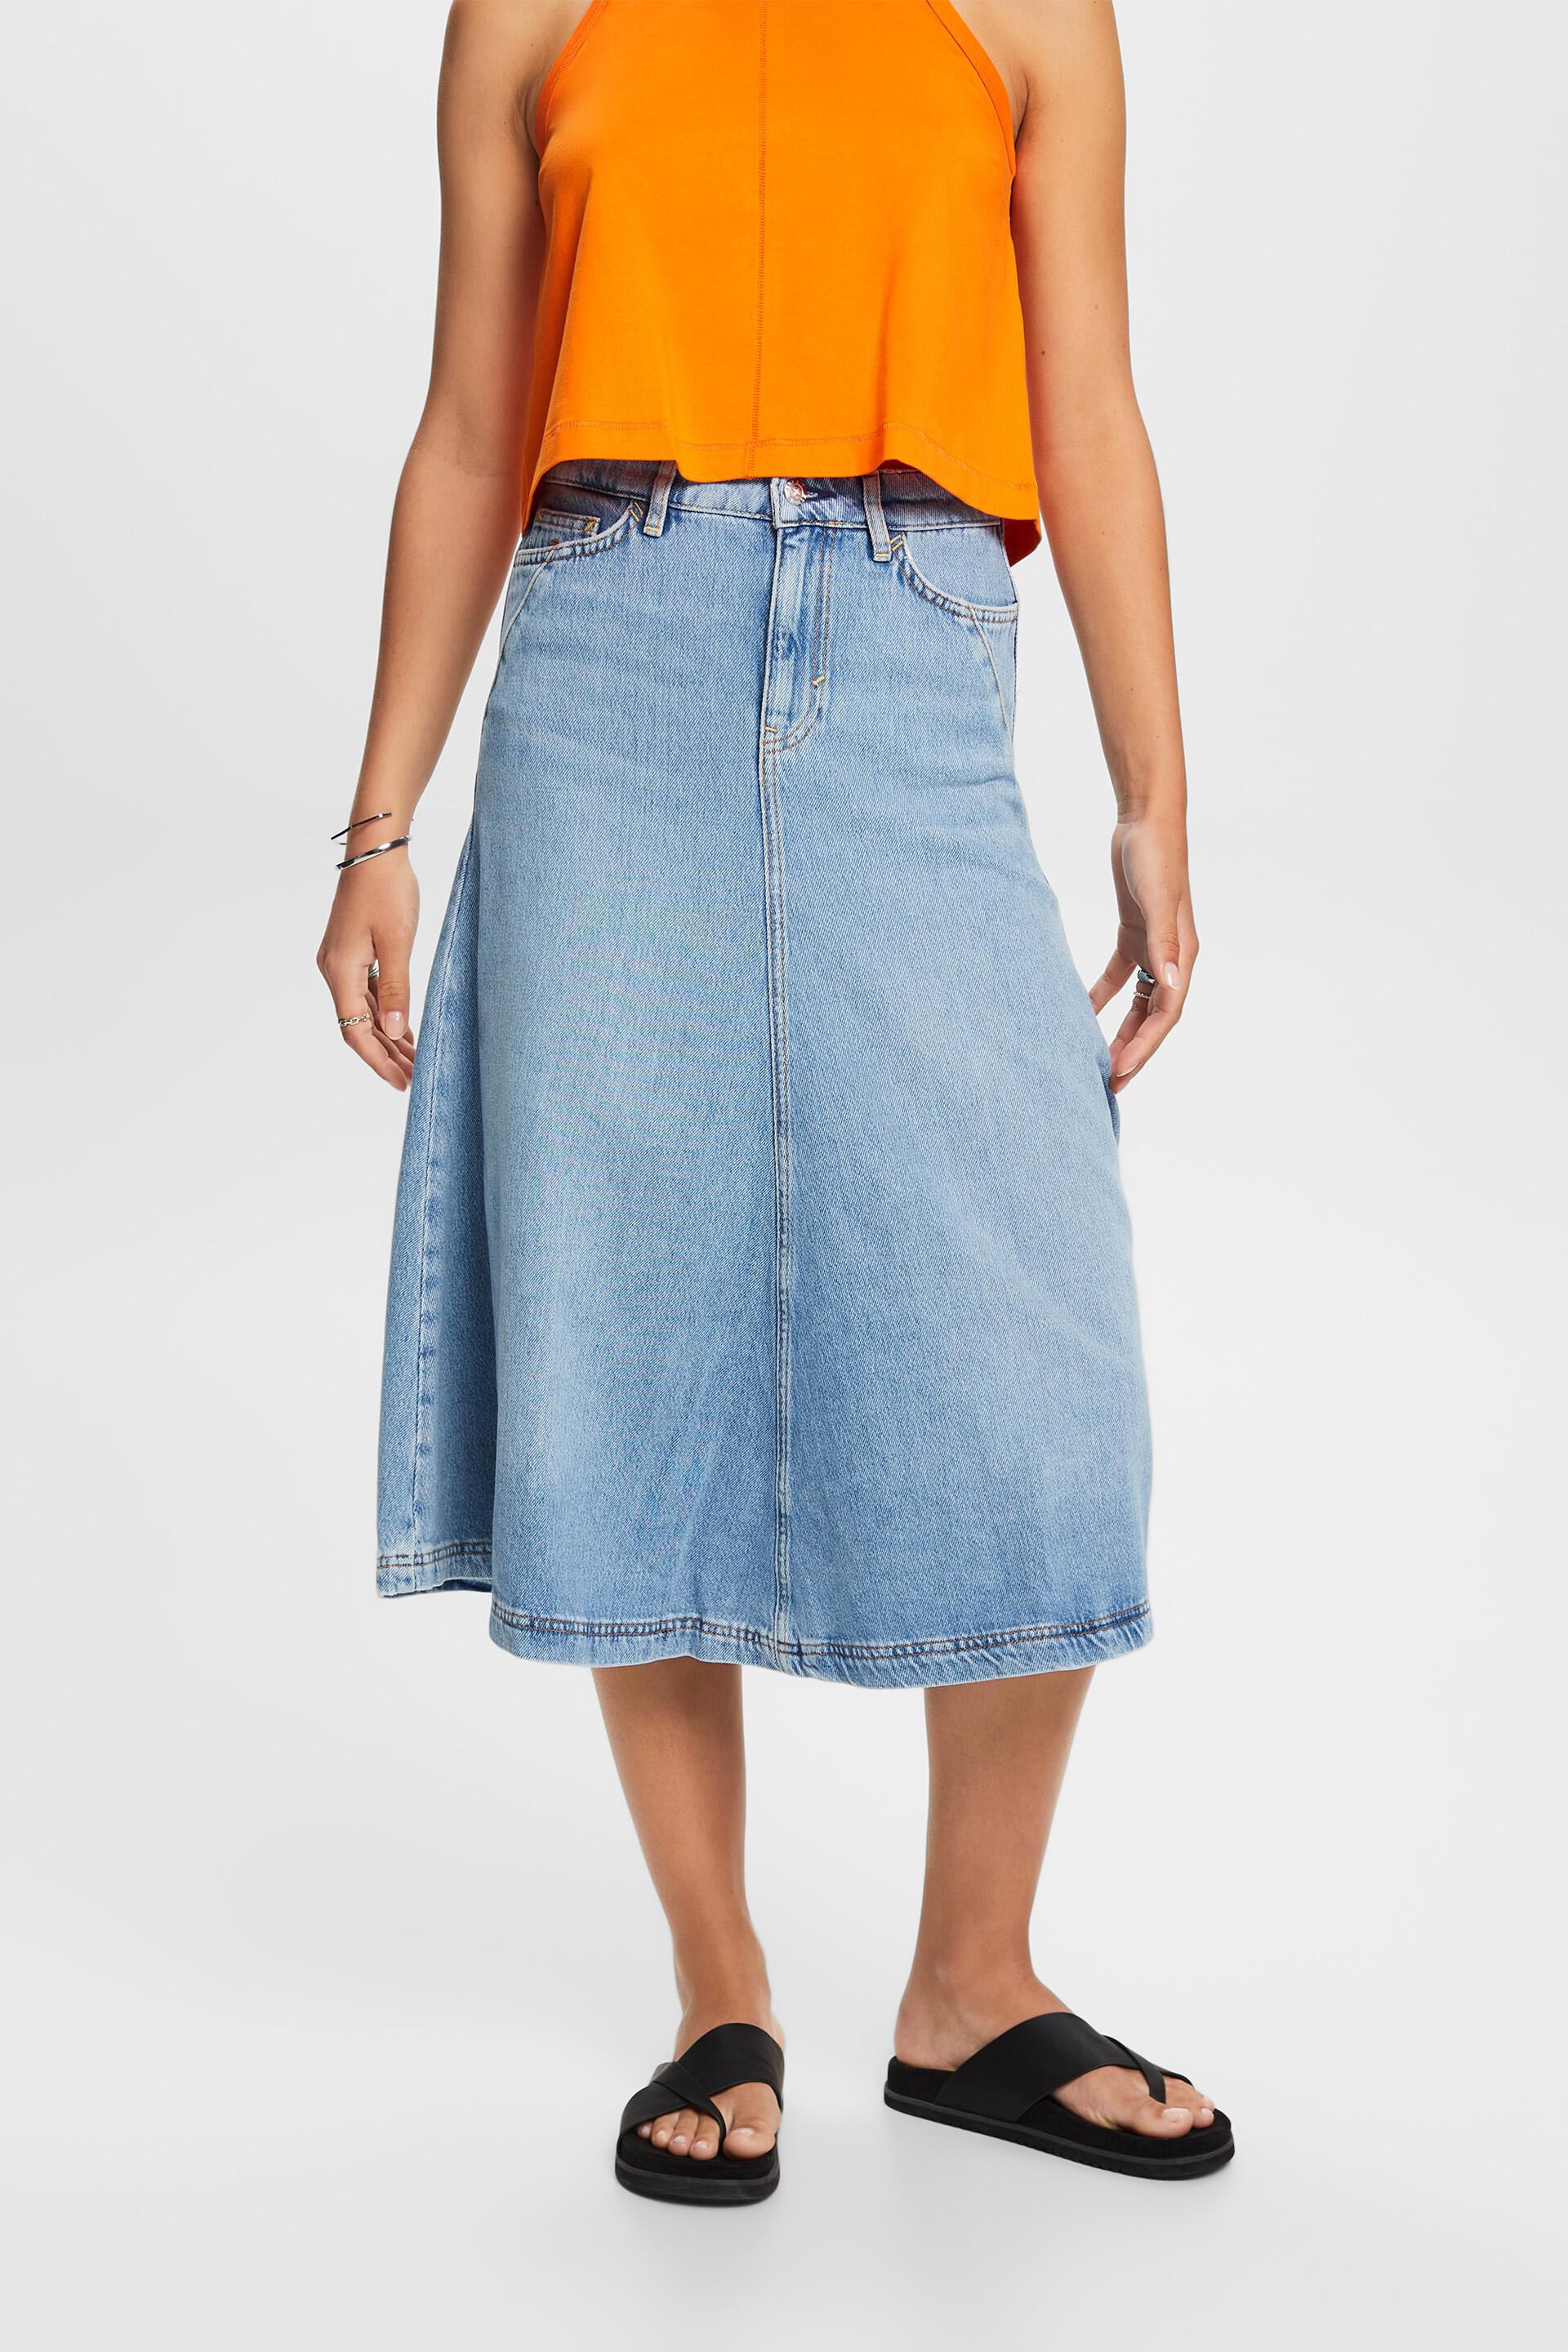 Esprit skirt, cotton blend midi Jeans